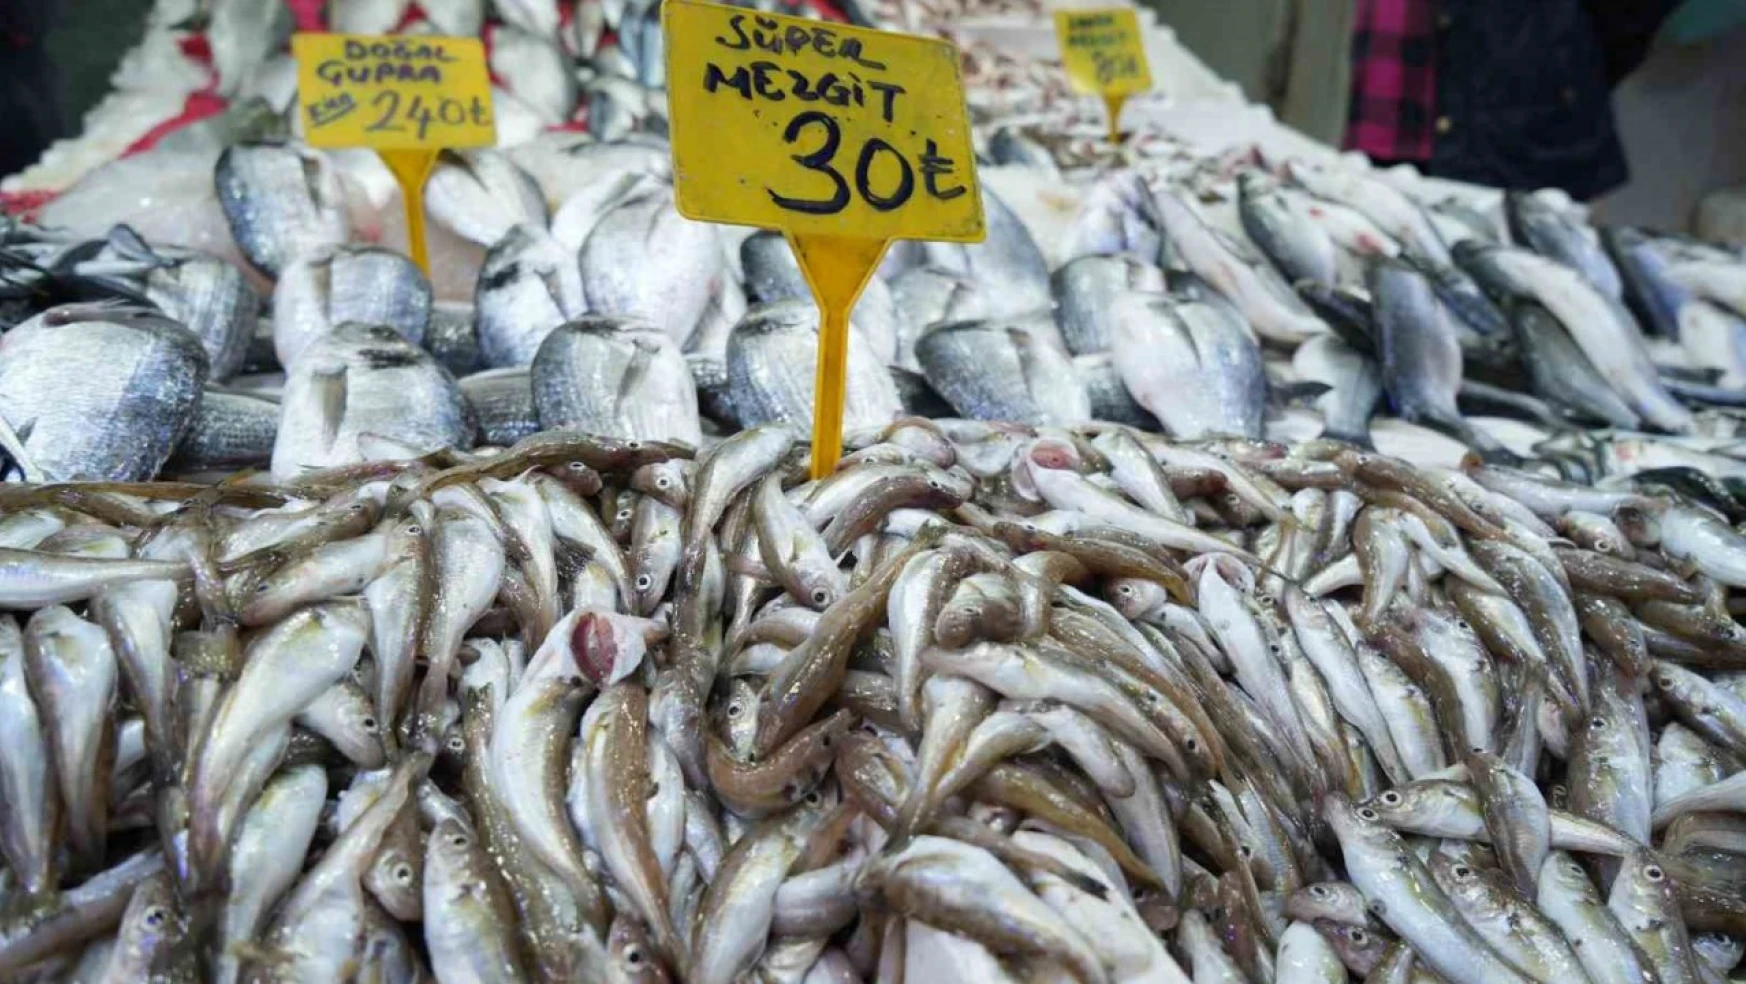 Kilosu 30 TL'ye satılan balıklara ilgi yok denecek kadar az